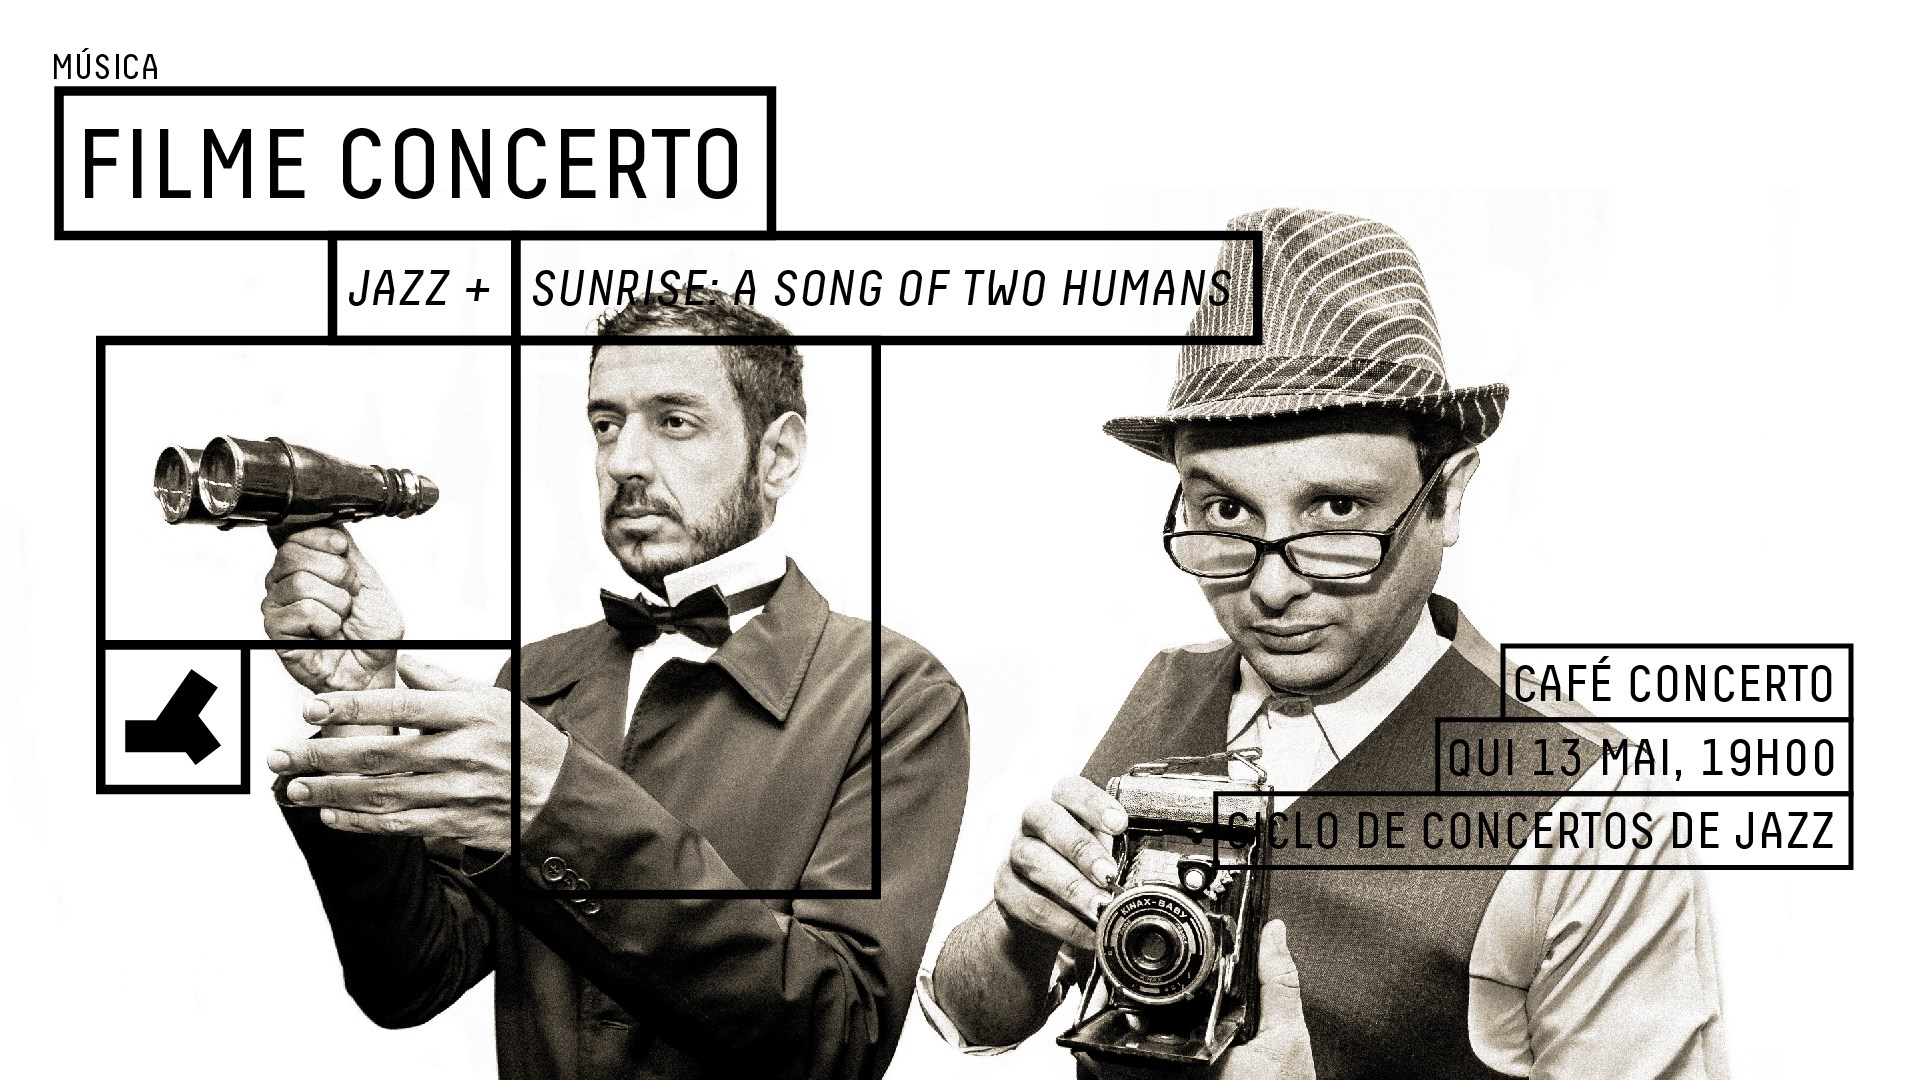 Filme Concerto - Jazz+ Ciclo de Concertos de Jazz - Nova Data